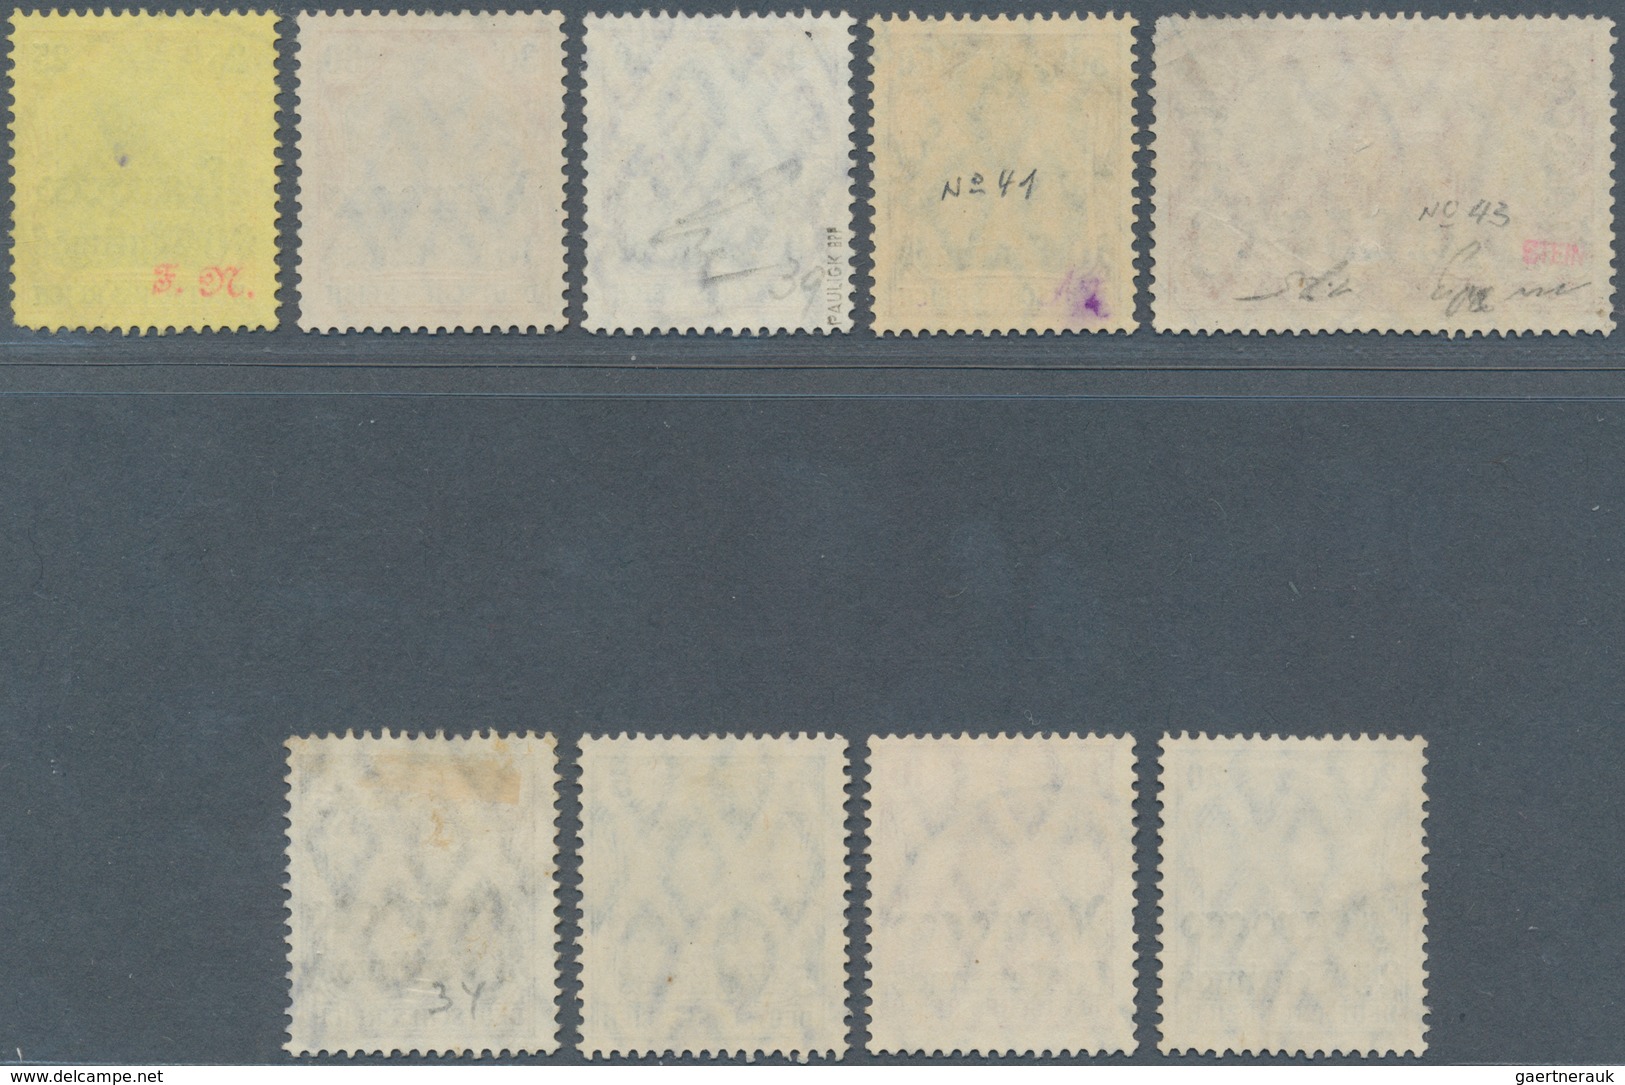 Deutsche Post In Marokko: 1906. Lot Von 9 Gestempelten Werten, Dabei 1P 25C (runde Ecke) Und 50c. (M - Deutsche Post In Marokko